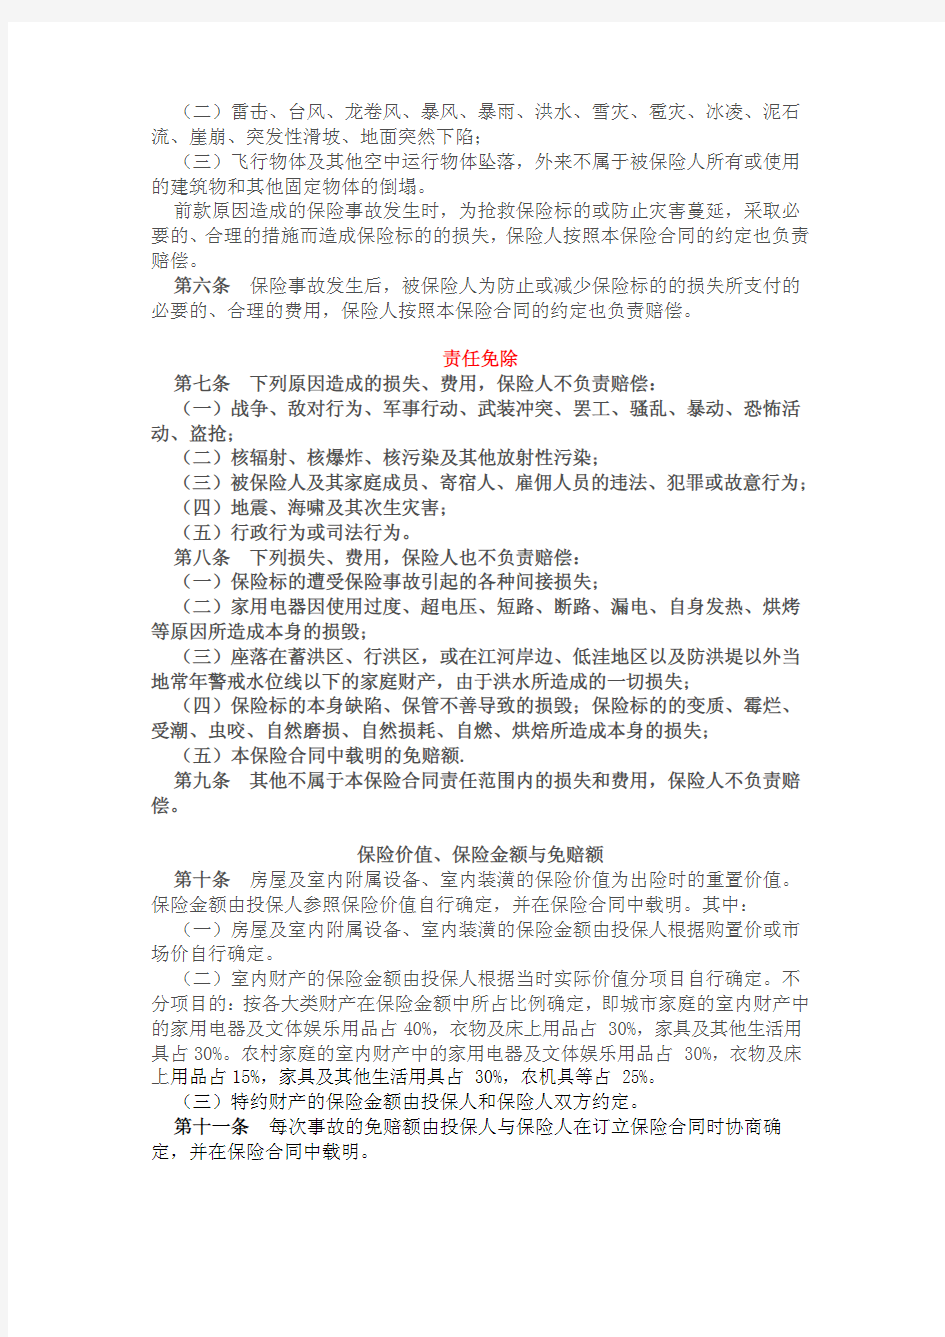 中国人民财产保险股份有限公司 家庭财产综合保险条款(